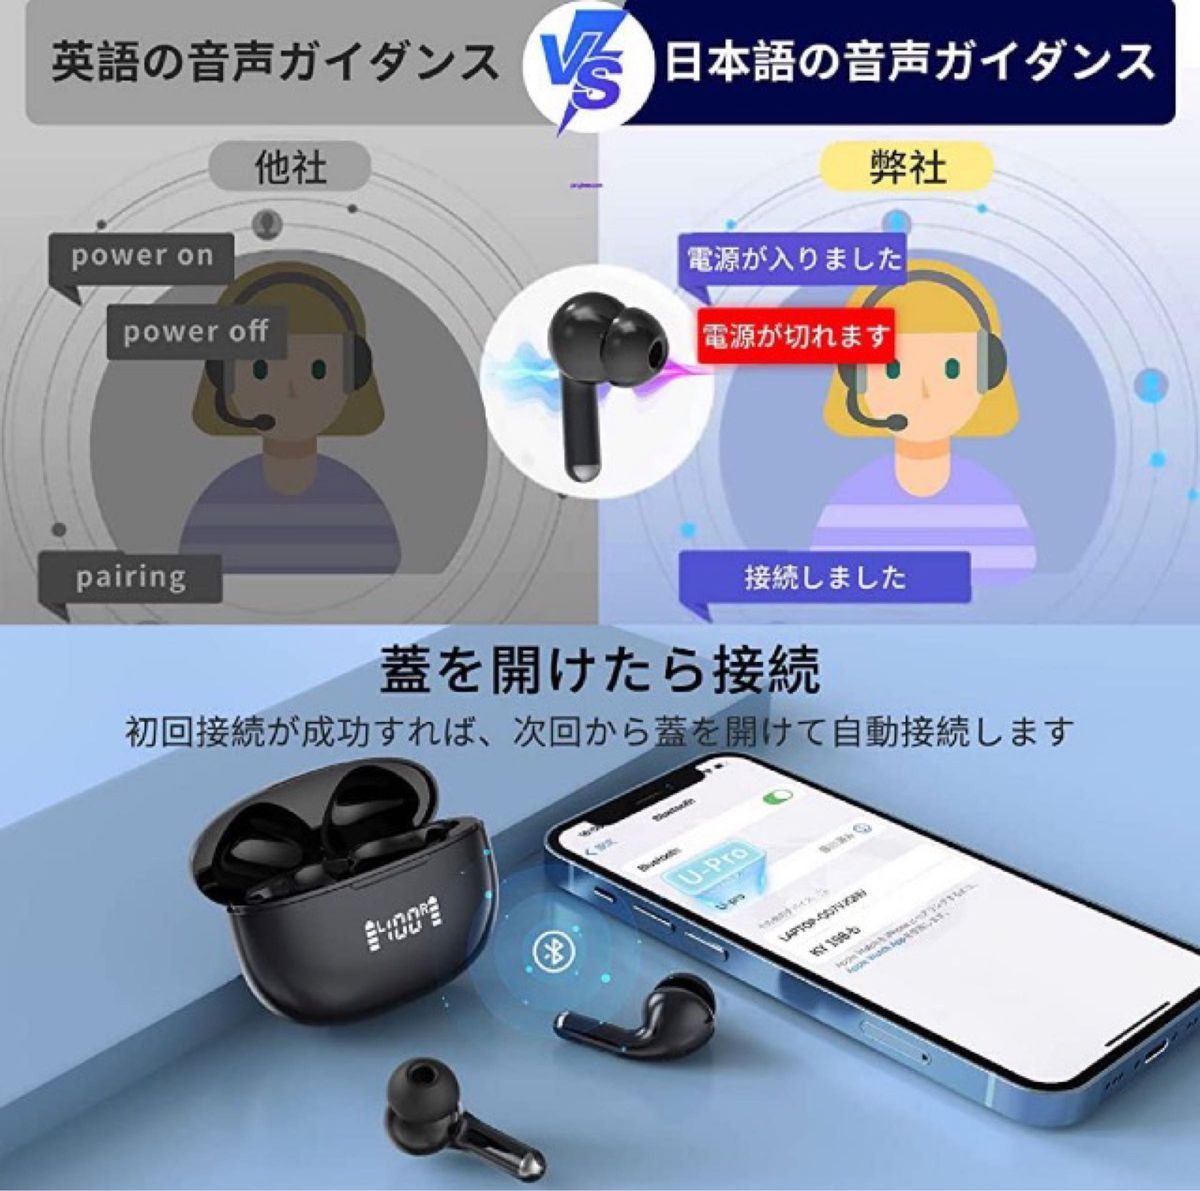 【Bluetooth5.3 技術 蓋を開けたら接続】bluetooth イヤホン ワイヤレスイヤホン マイク付き 重低音Hi-Fi